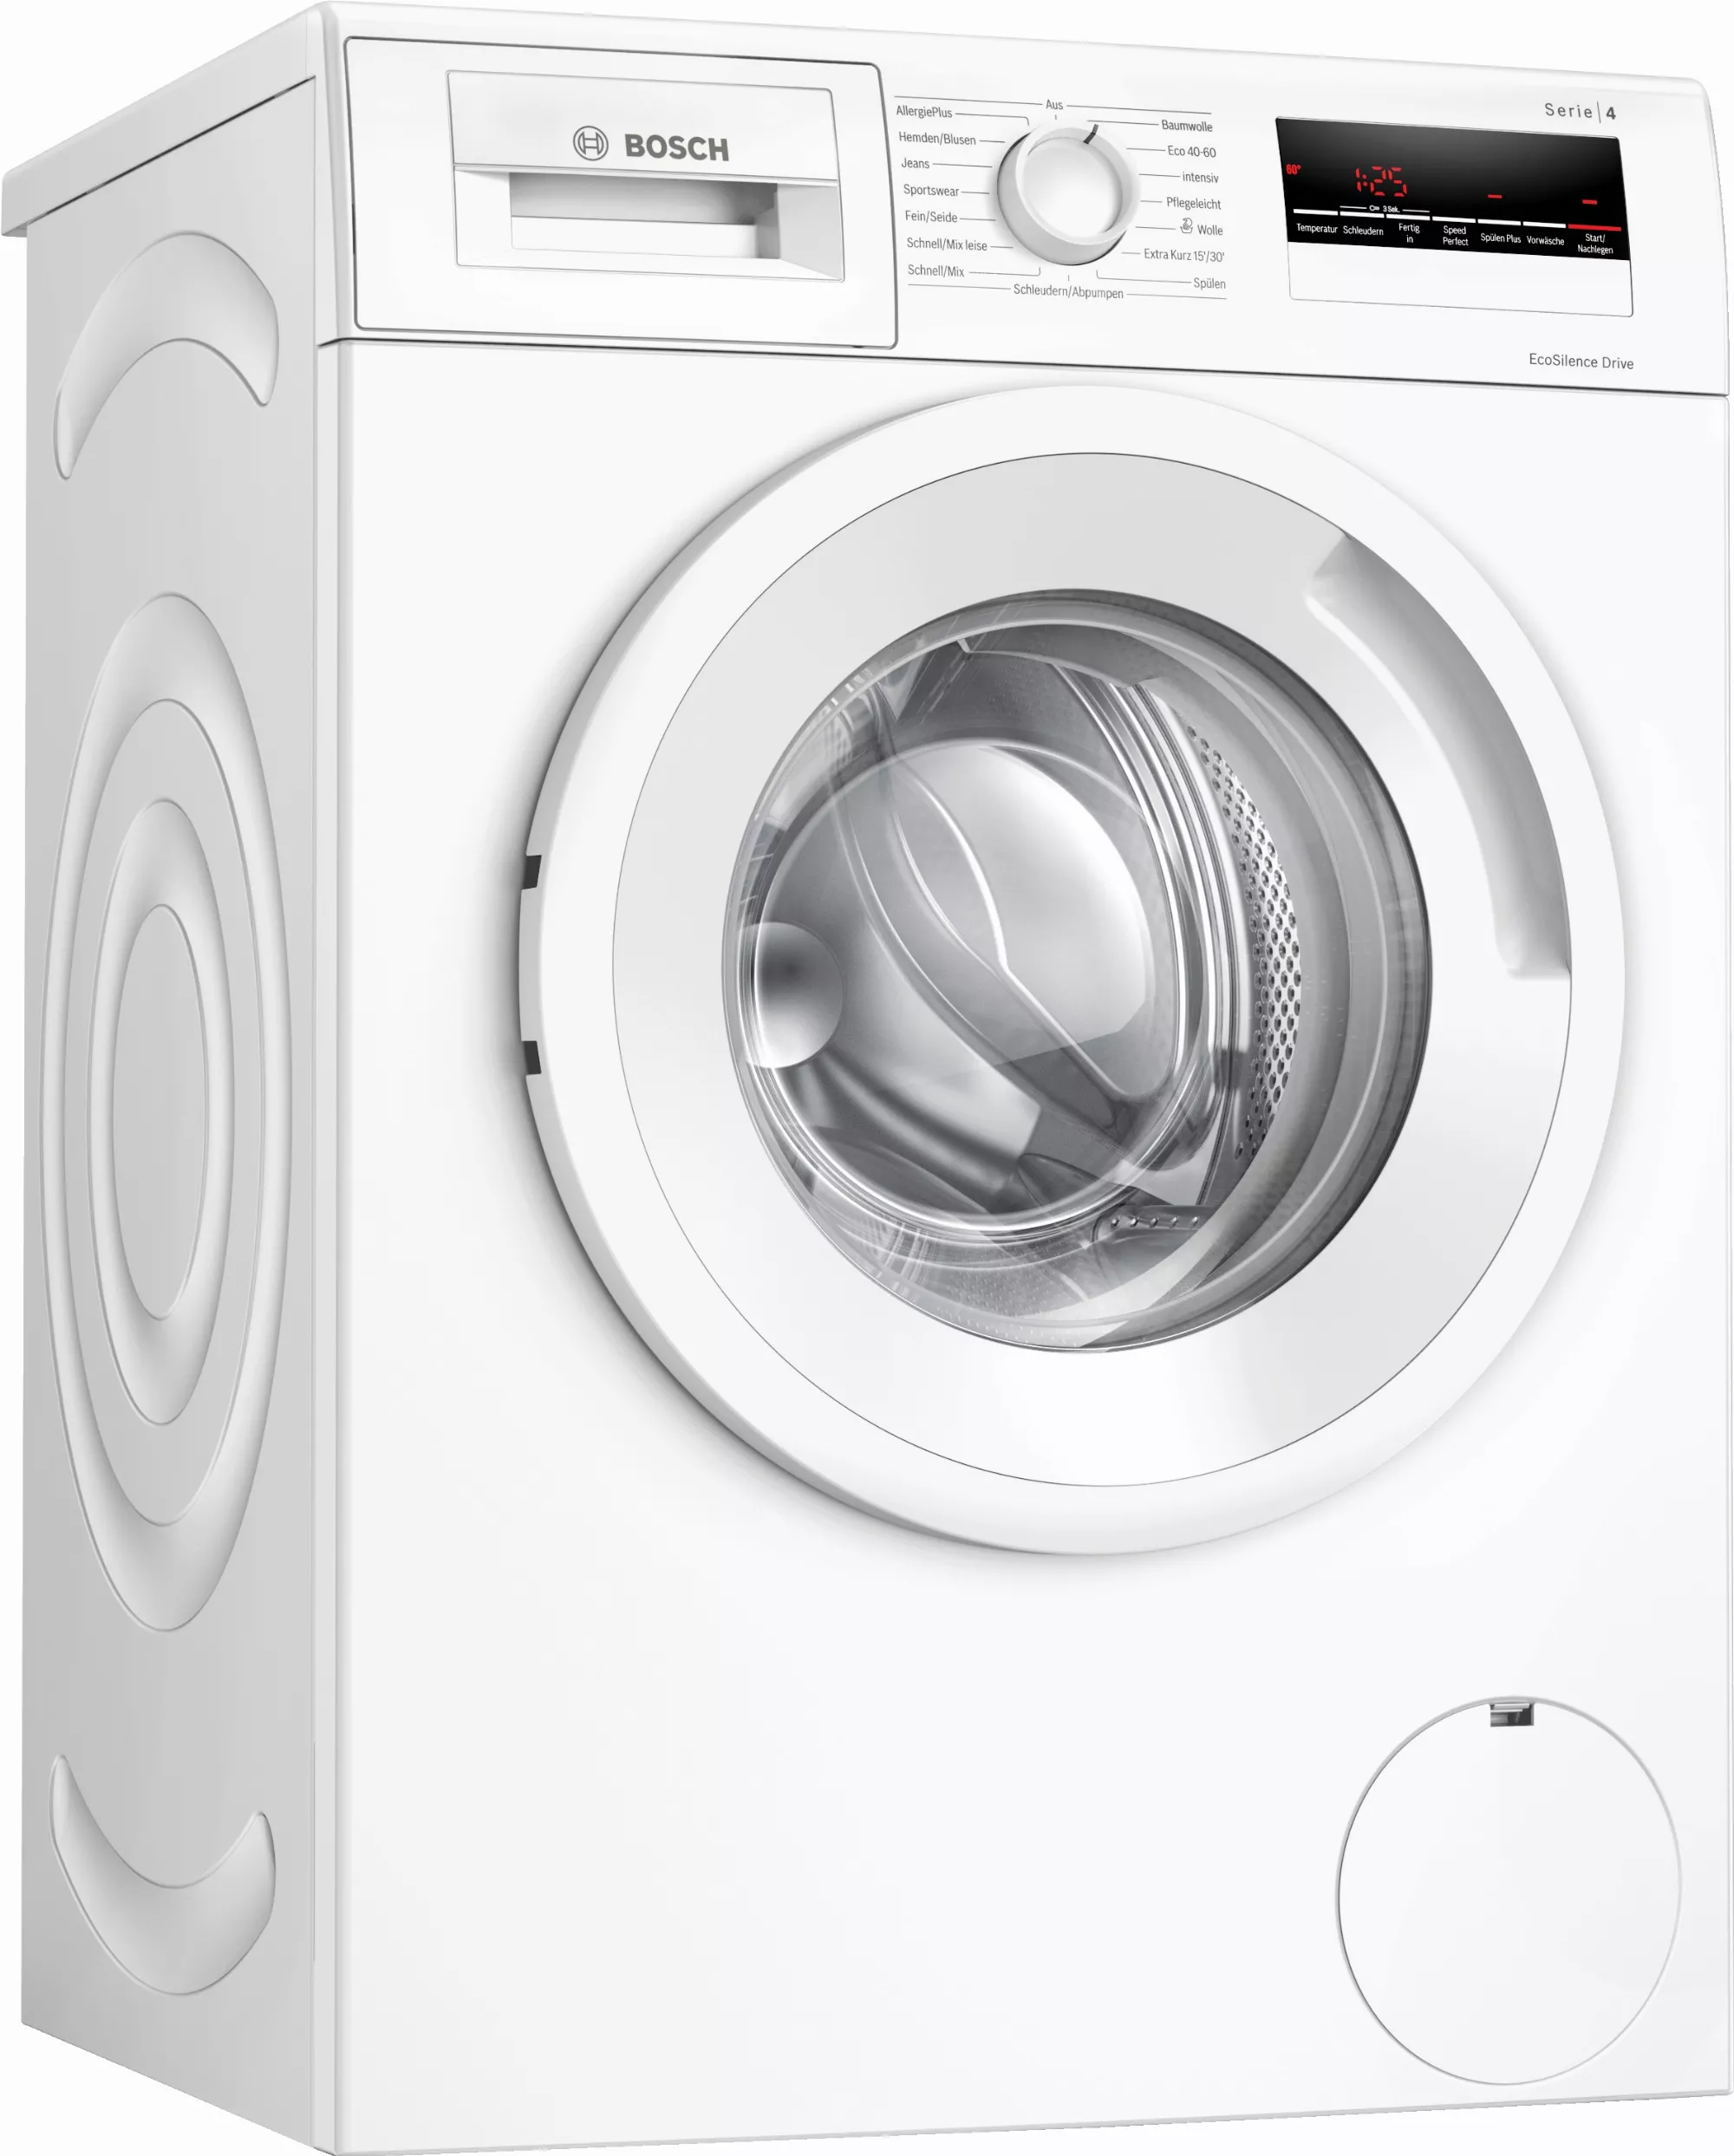 BOSCH Waschmaschine WAN282A2, 7 kg, 1400 U/min